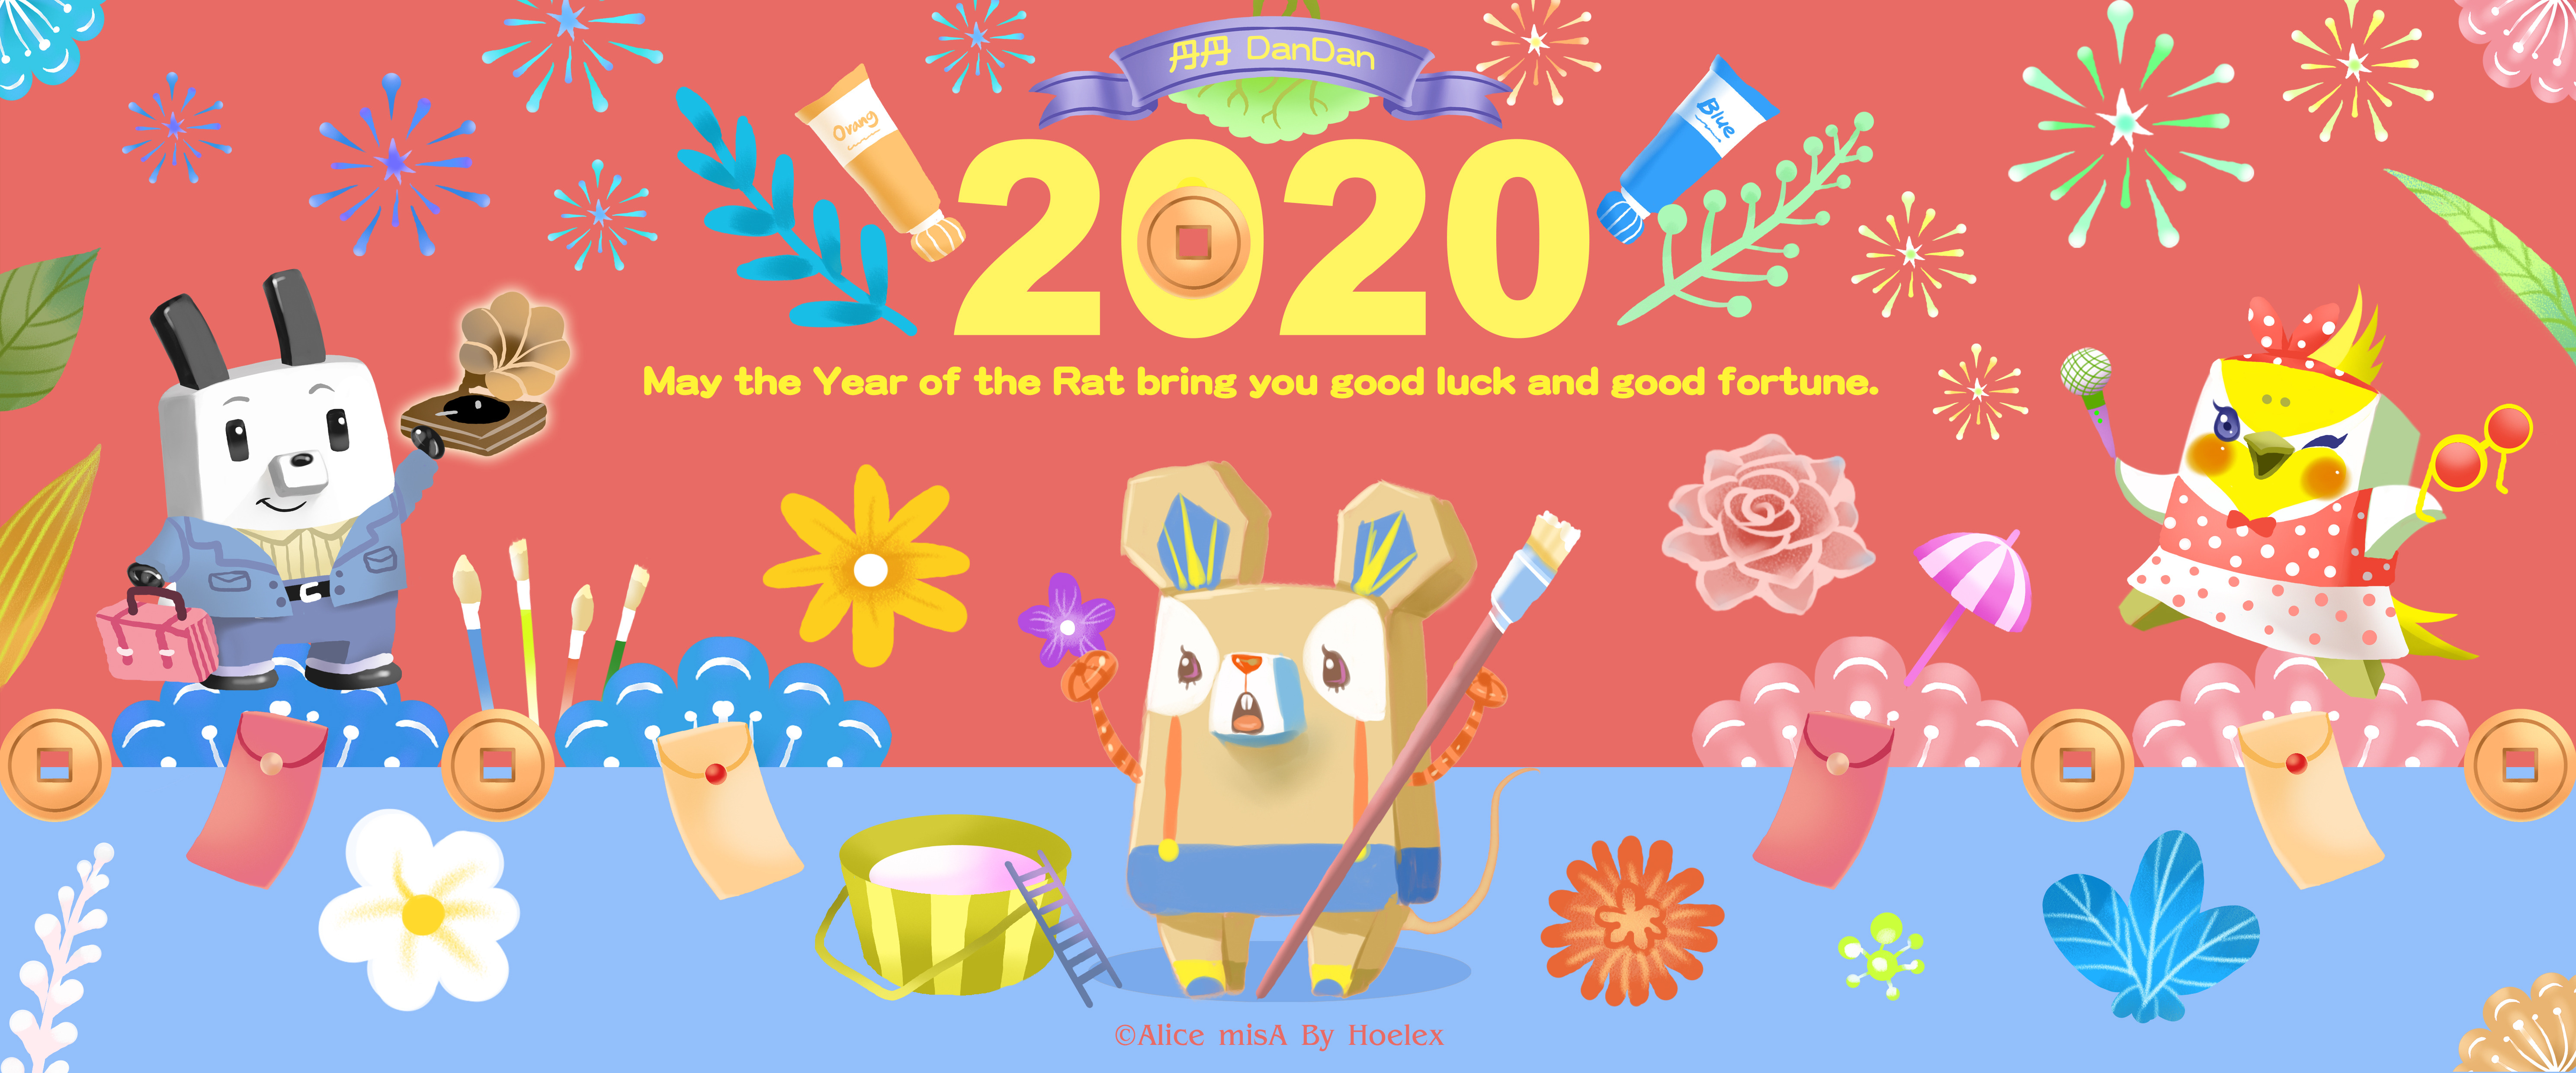 DODO-ZOO-新年賀圖-2020-鼠年行大運-丹丹DanDan-Hoelex(橫).jpg